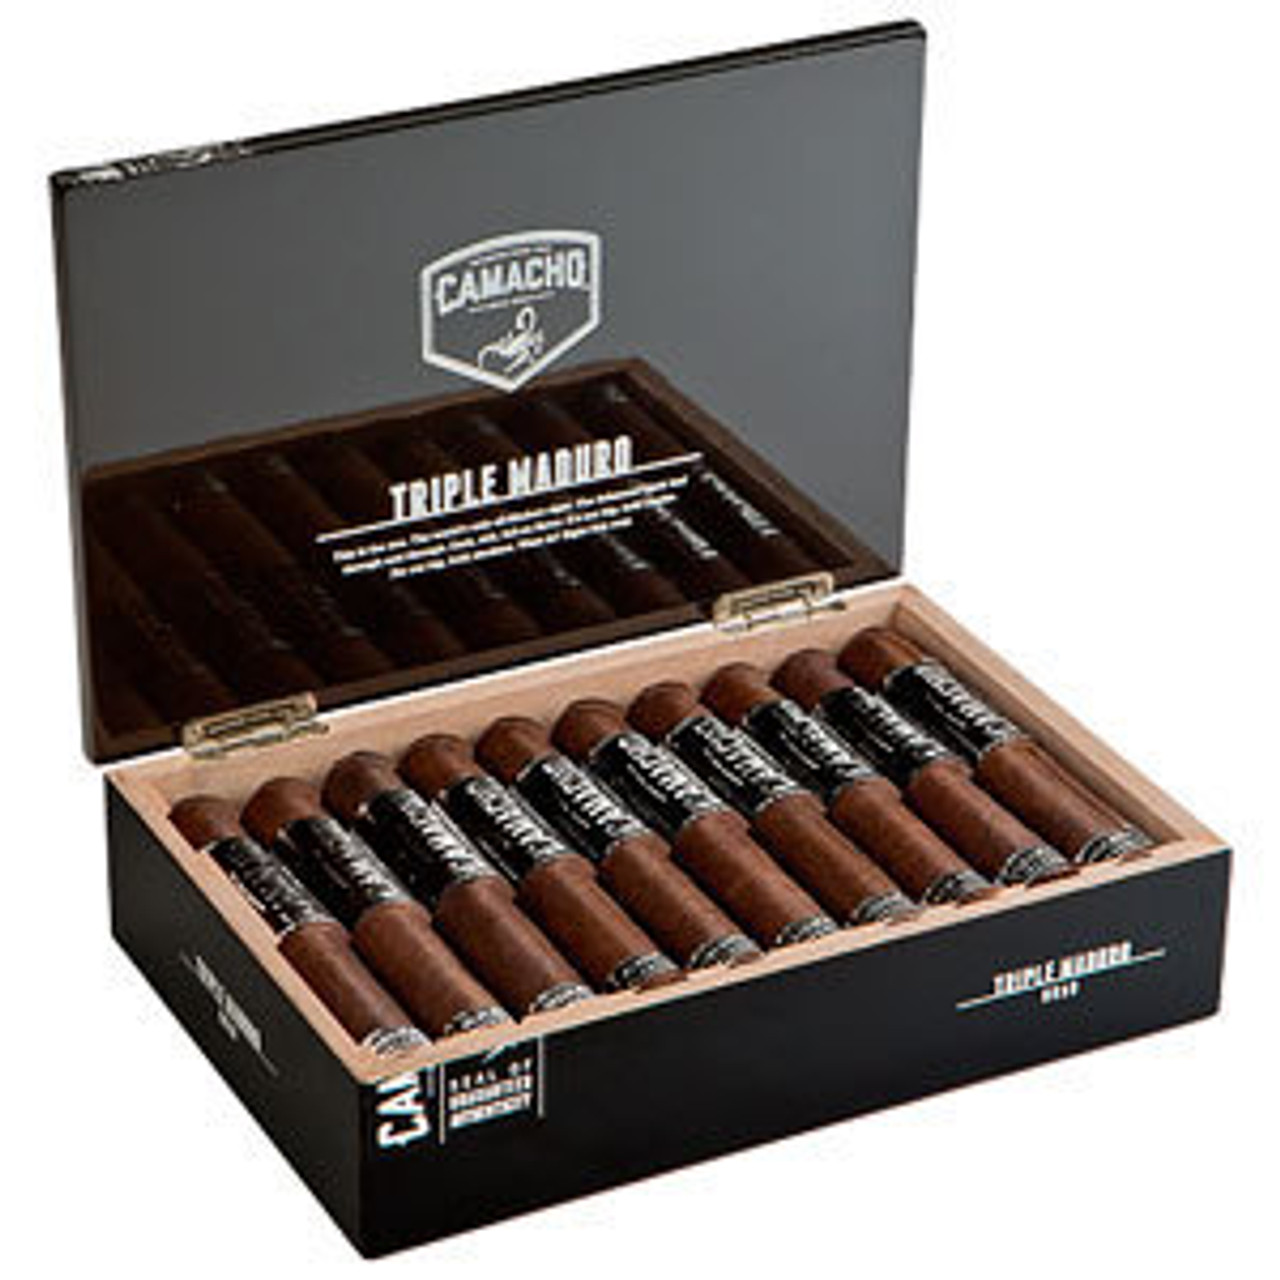 Camacho Triple Maduro Robusto Cigars - 5.0 x 50 (Box of 20) *Box